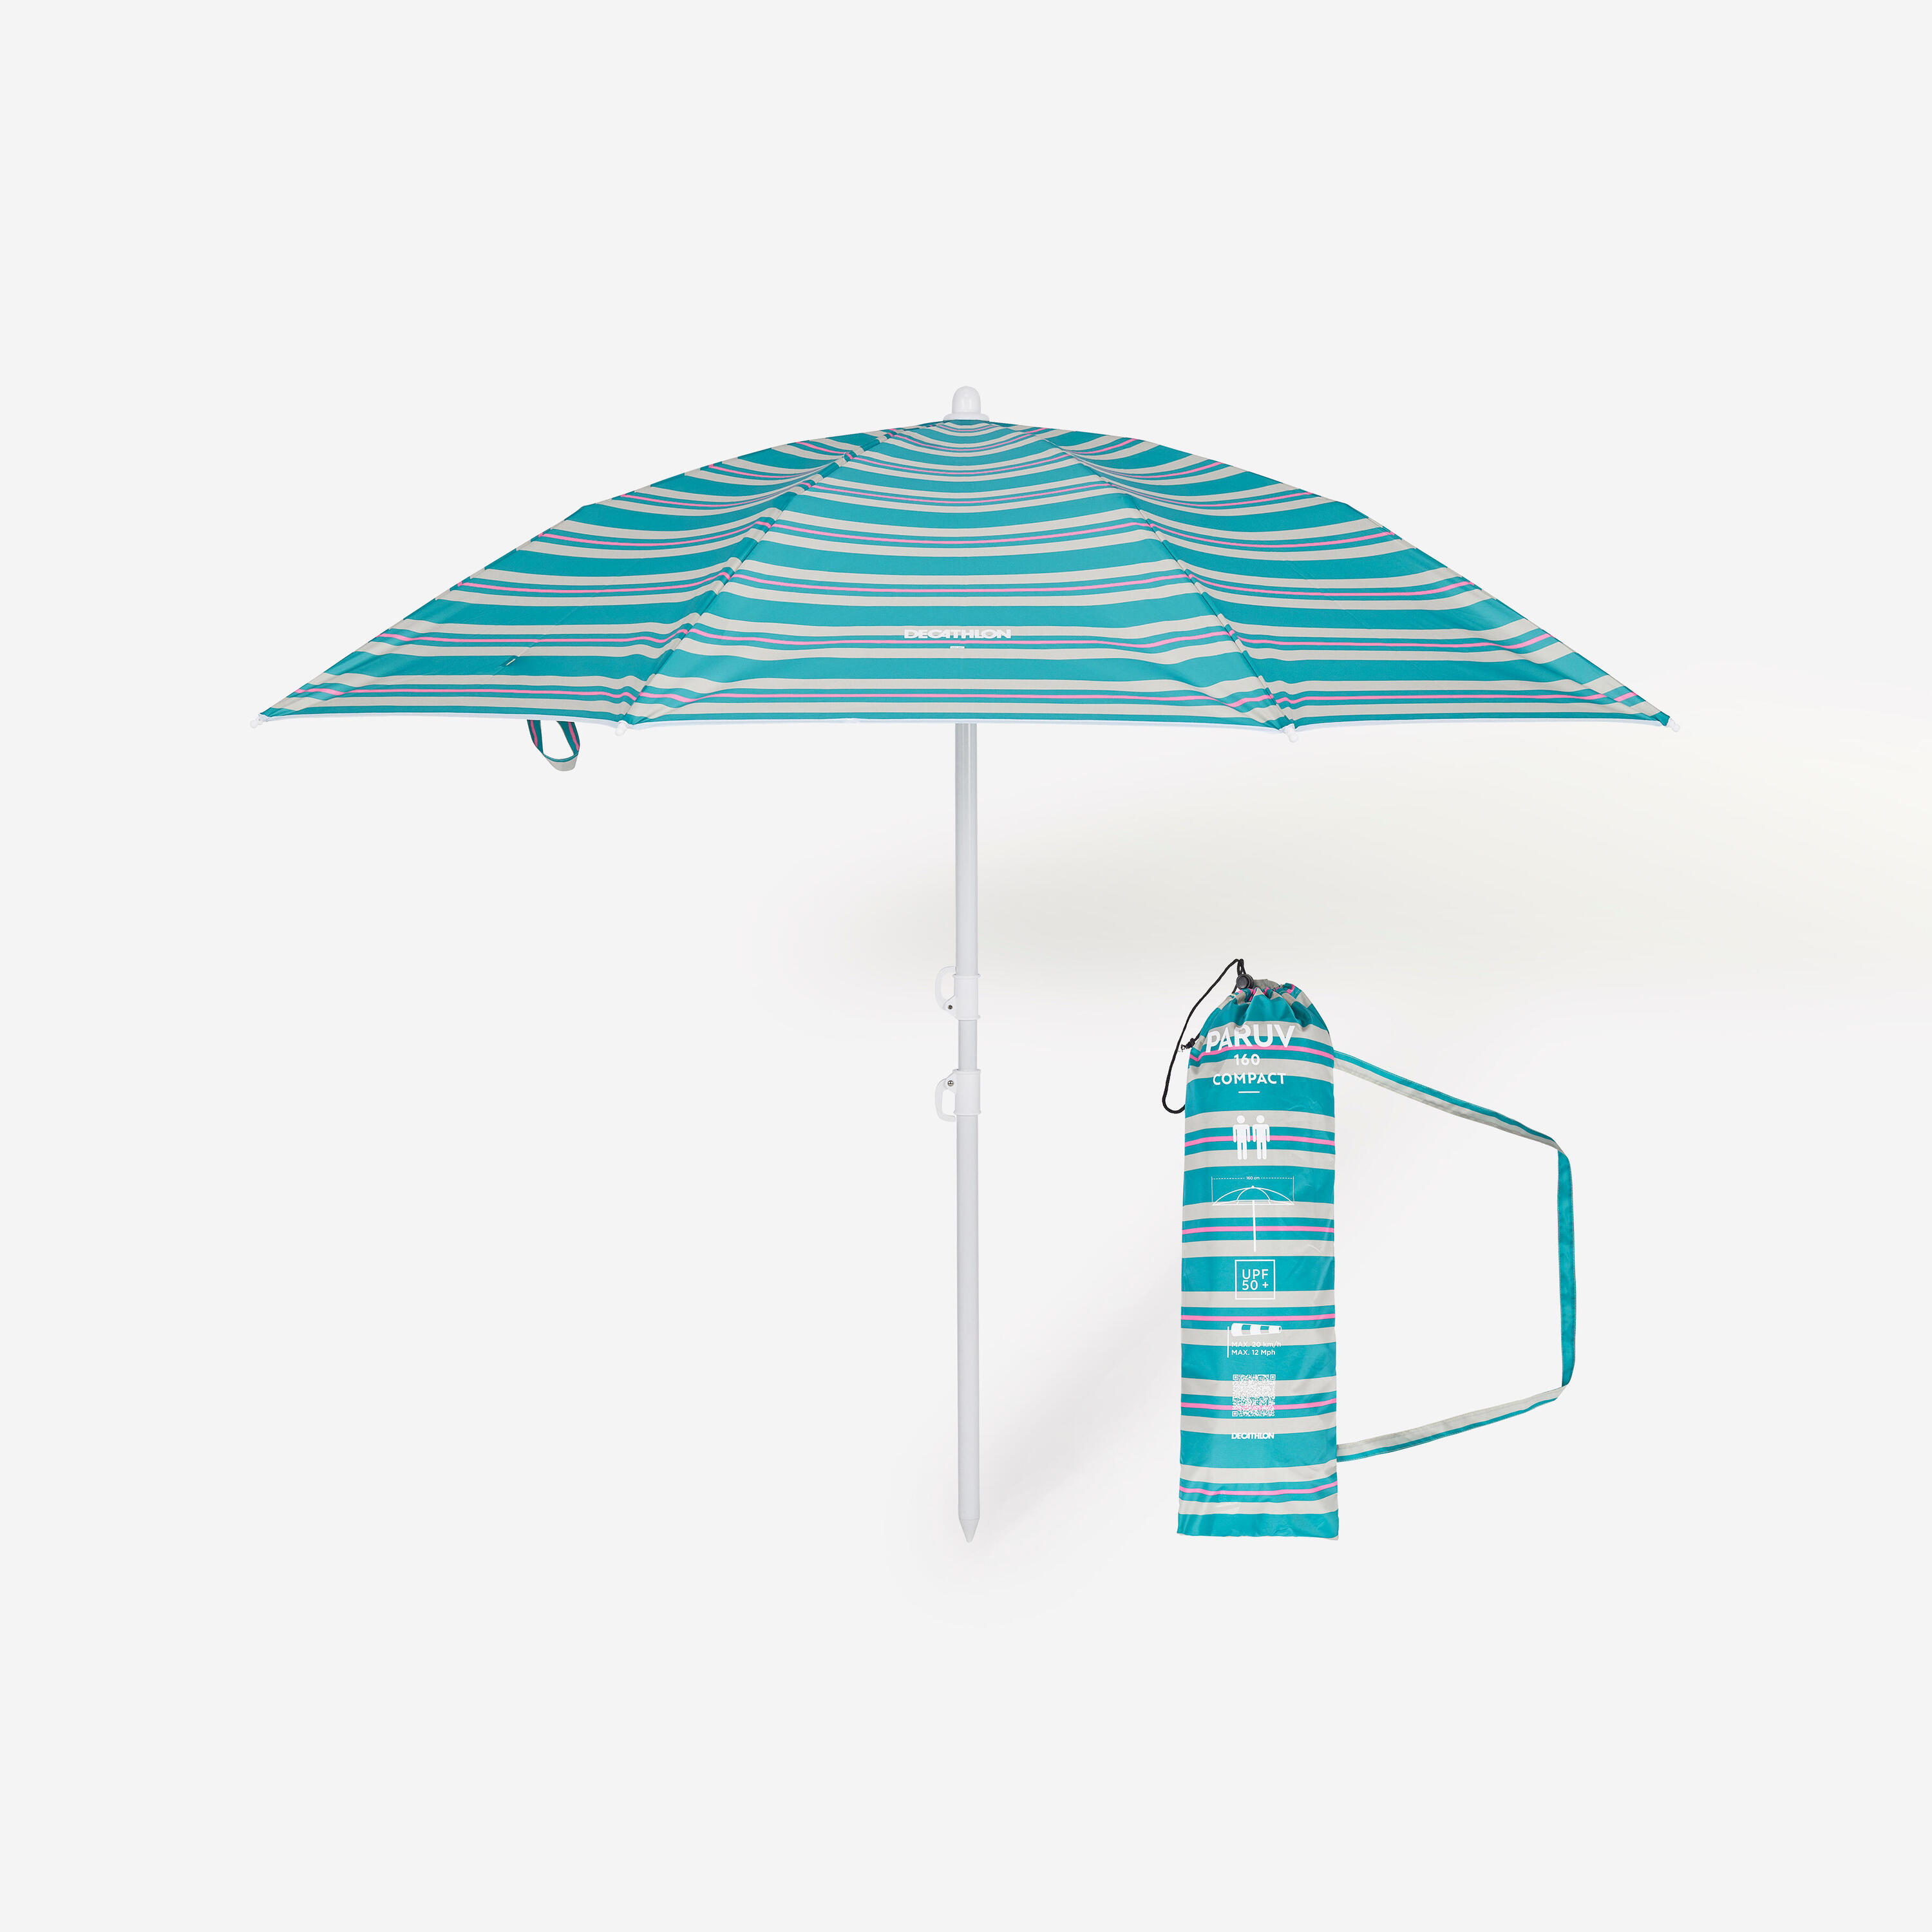 Compact beach umbrella 2 person UPF 50+ - Paruv 160 green stripe 1/8